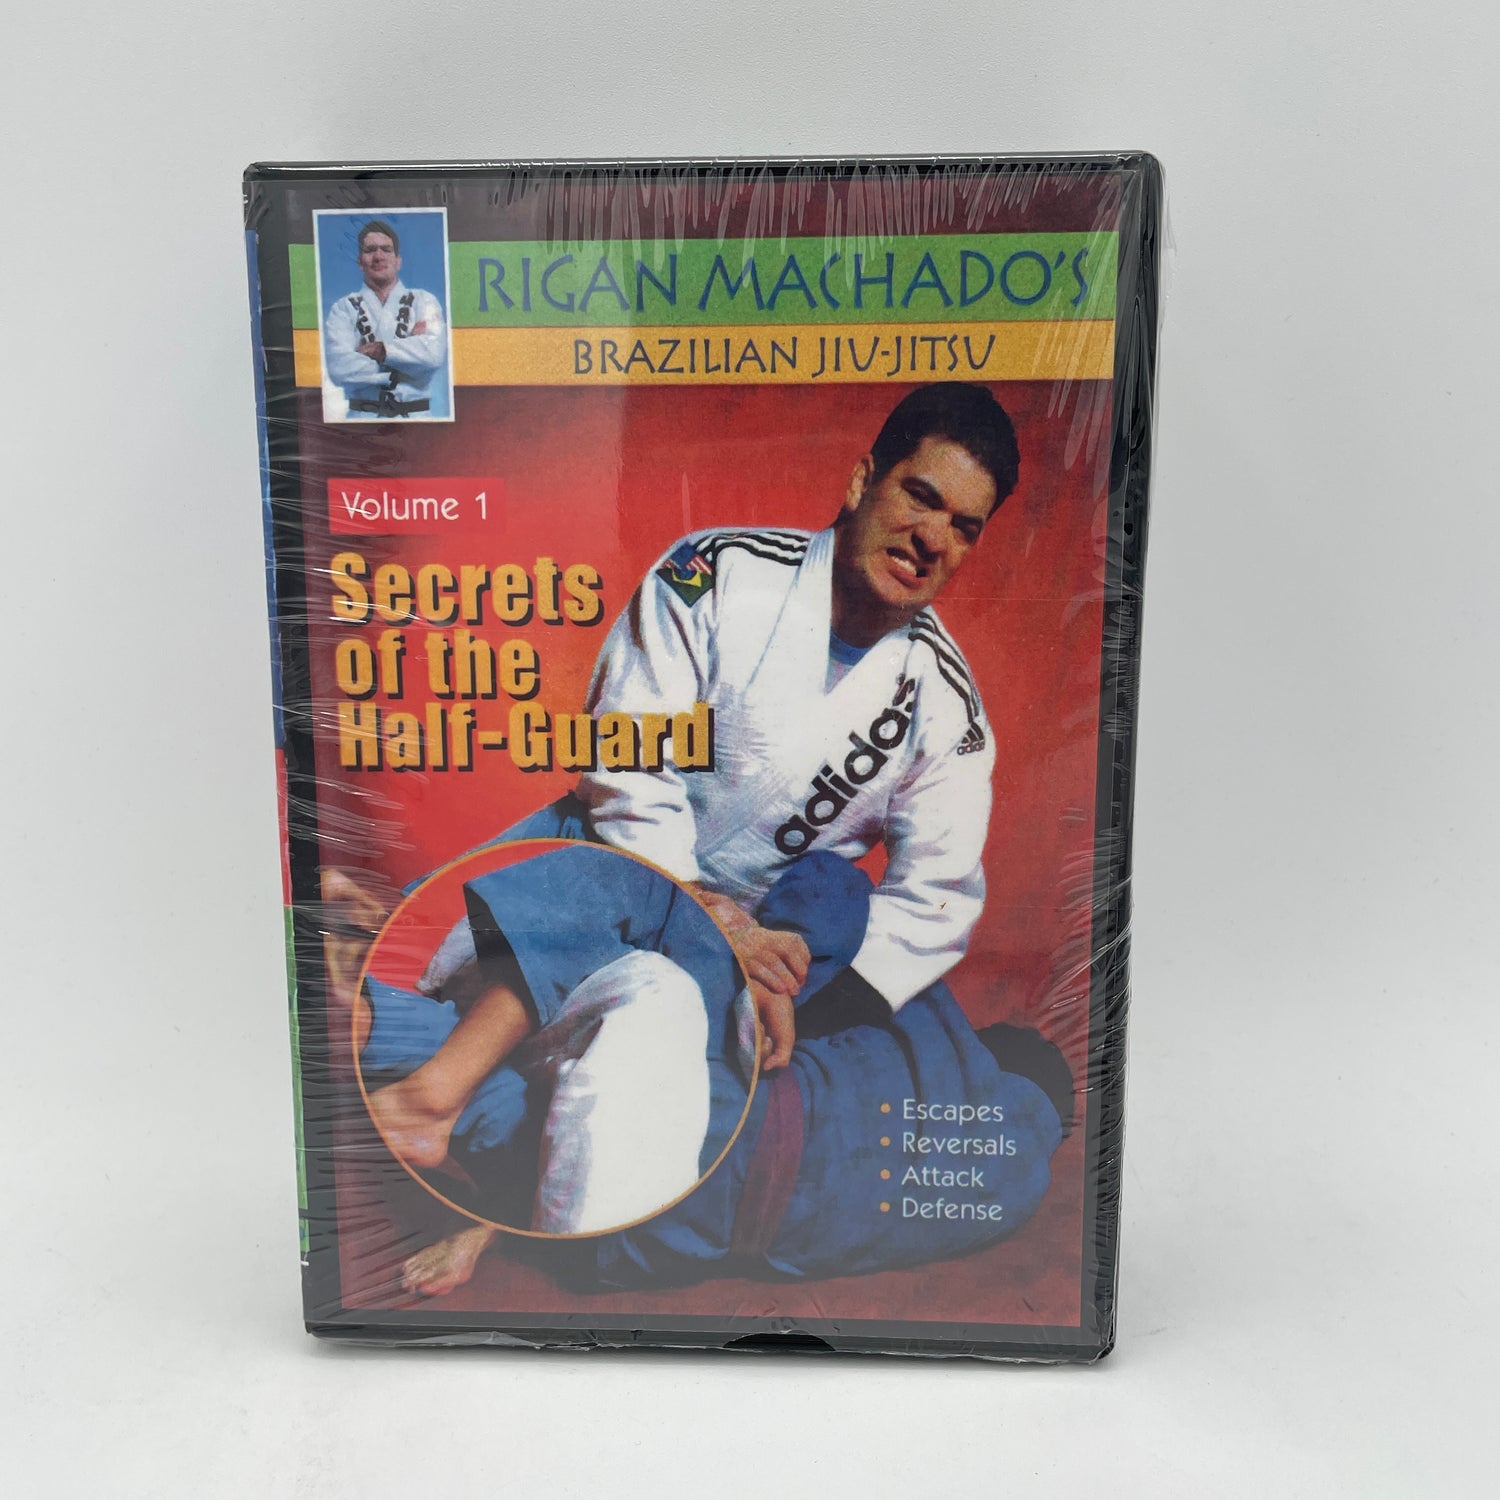 ハーフ ガードの秘密 3 DVD セット (リガン・マチャド著)